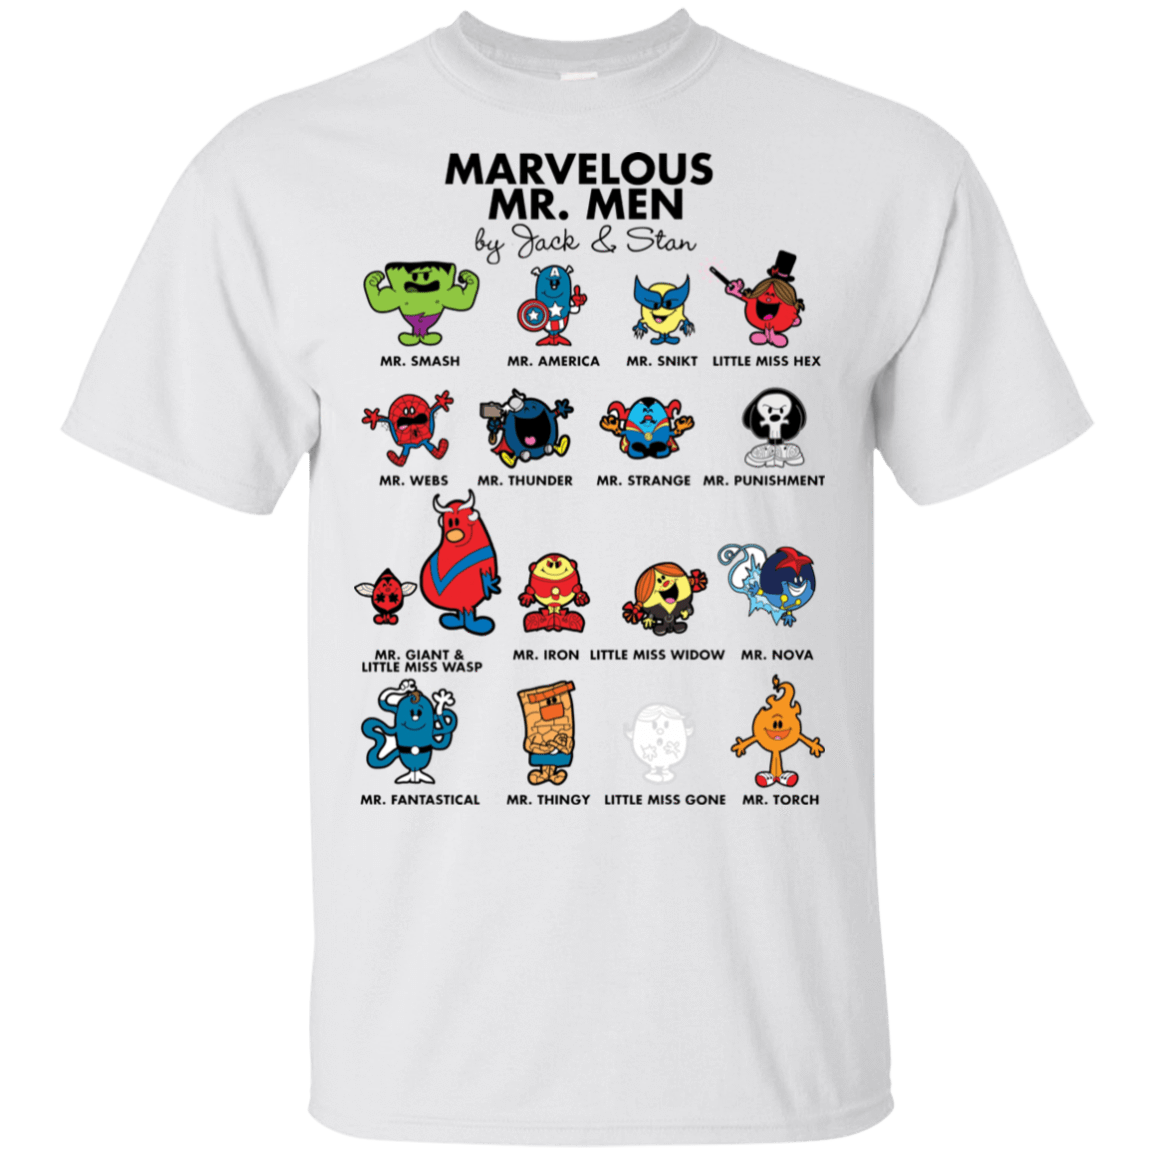 Men's Marvel Spider-Man Short Sleeve Graphic T-Shirt - White S